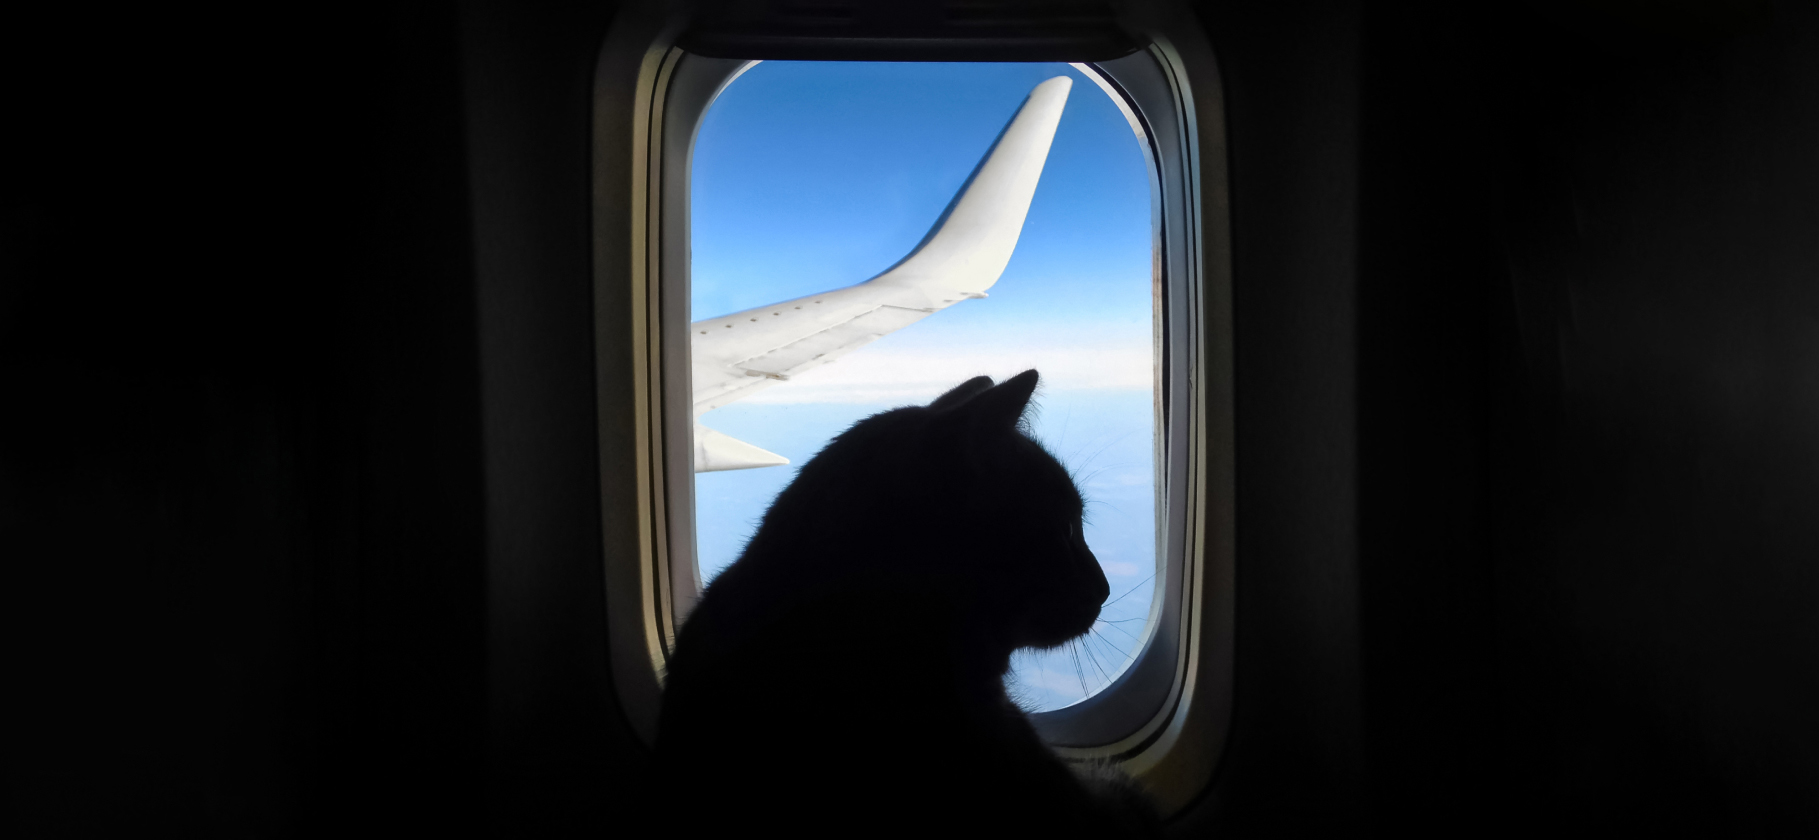 «Взяла бизнес-класс, чтобы у кота было больше места»: 6 историй о переезде с животными